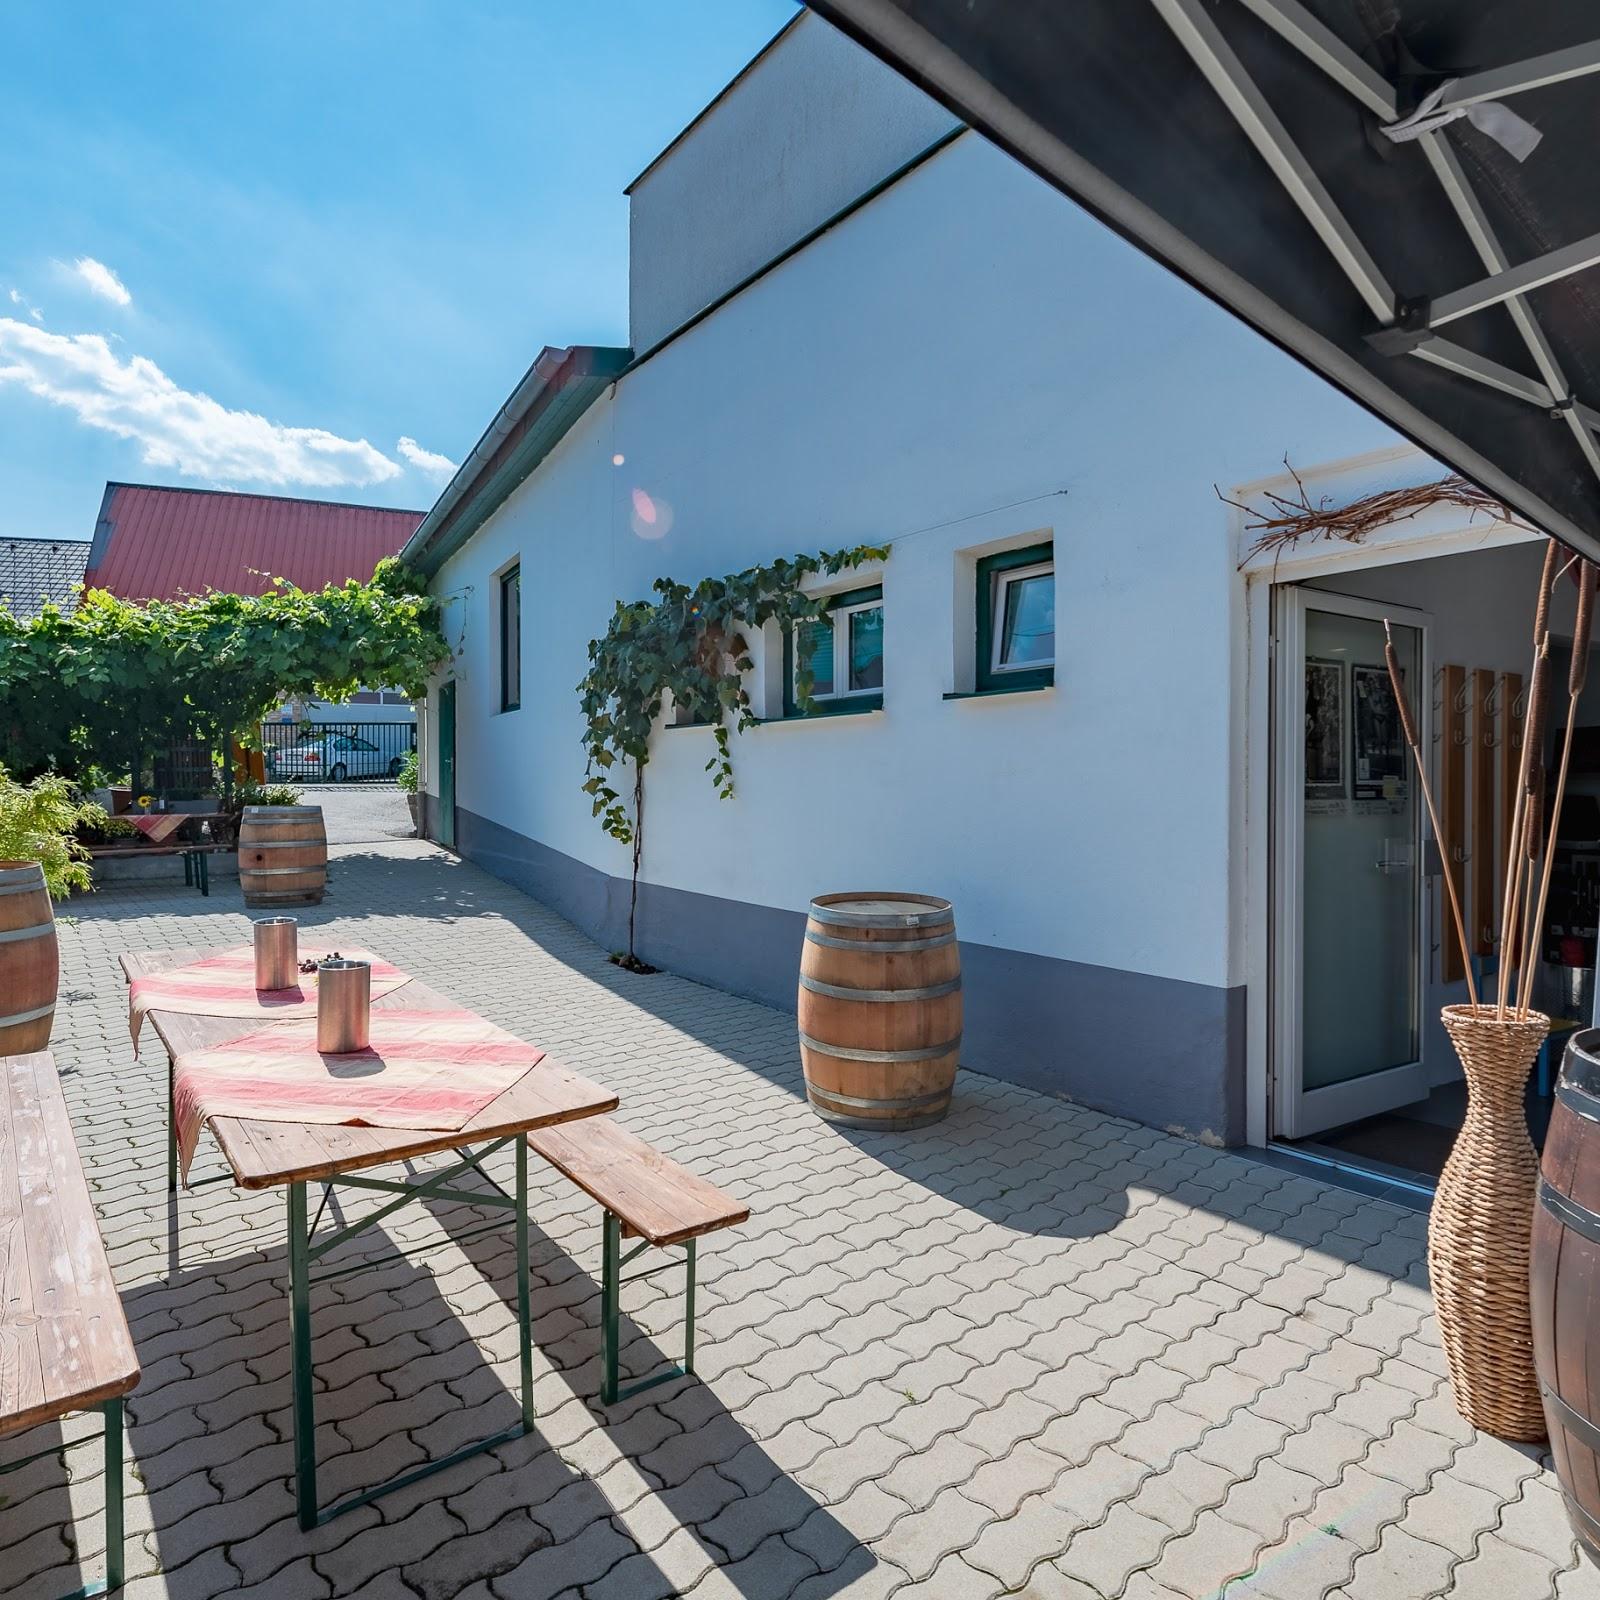 Restaurant "Weingut Lichtscheidl" in Eisenstadt